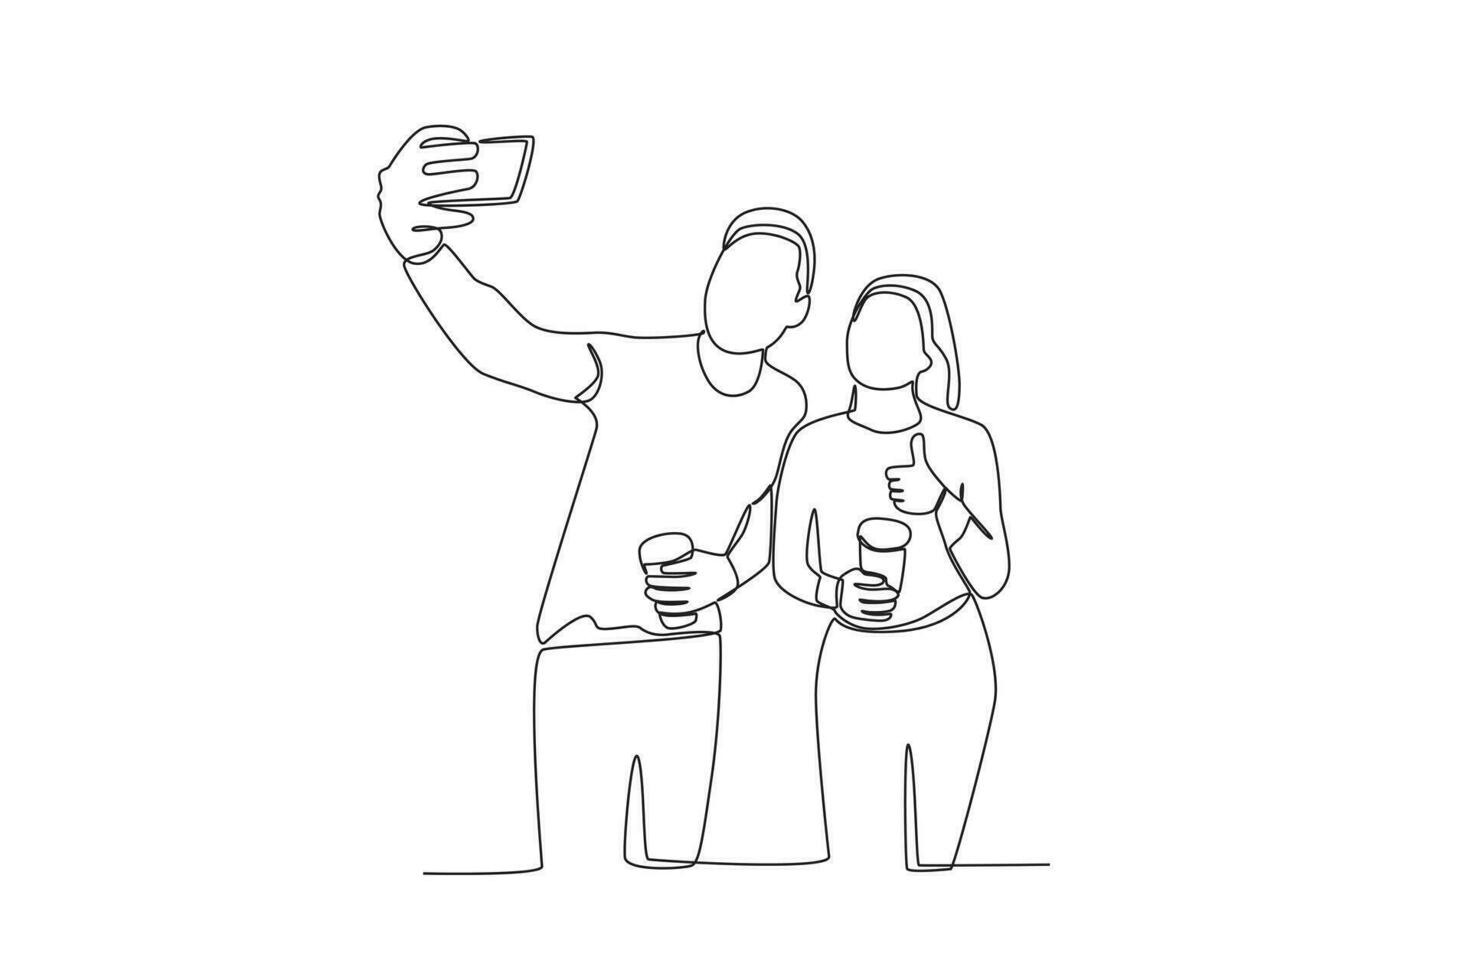 soltero continuo línea dibujo de dos amigos tomando selfie vector